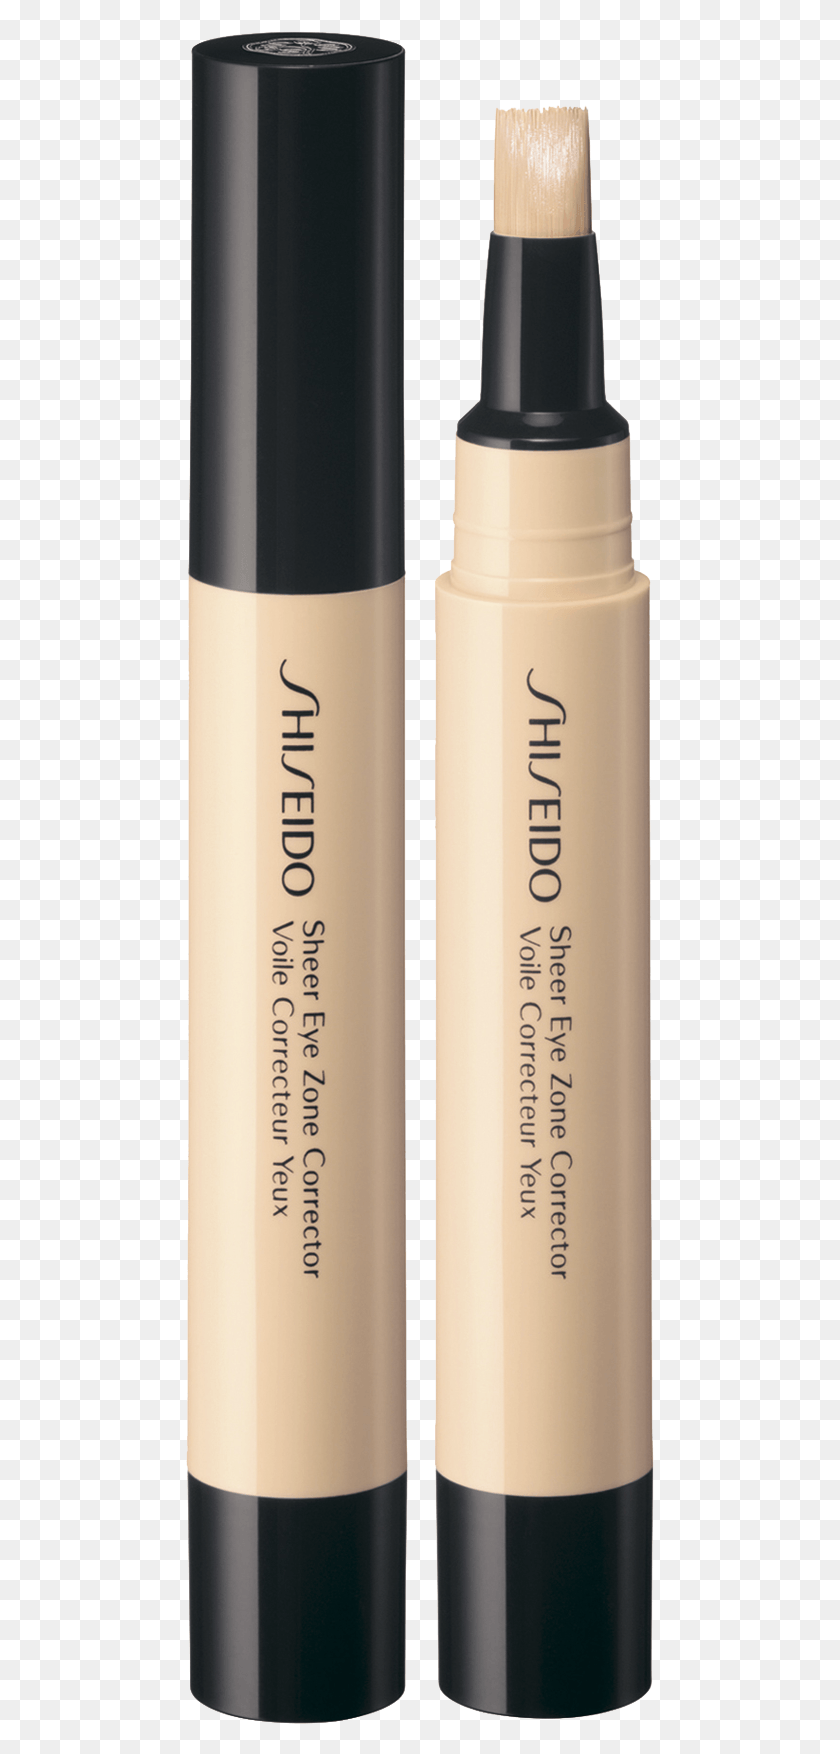 469x1694 Sheer Eye Zone Corrector Shiseido Sheer Eye Zone Corrector, Cosmetics, Mascara HD PNG Download